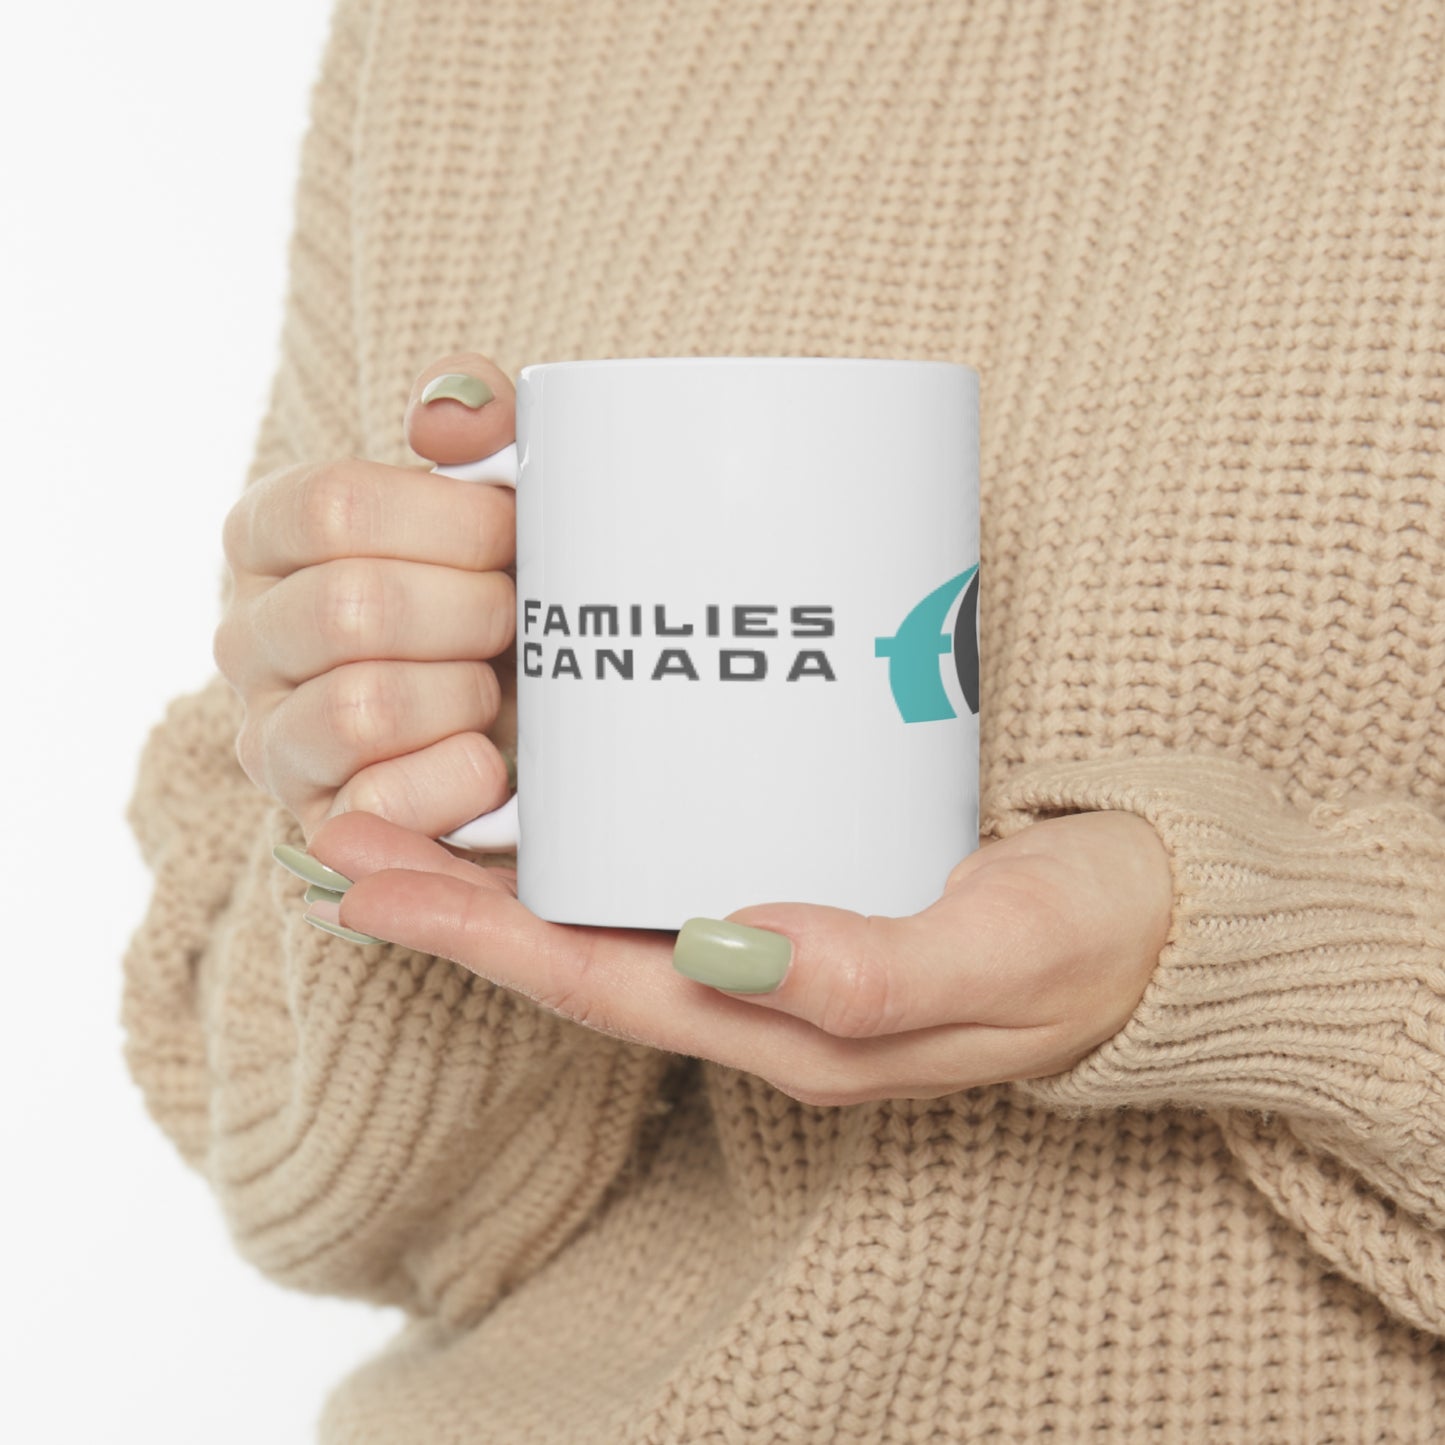 Families Canada Ceramic Mug 11oz